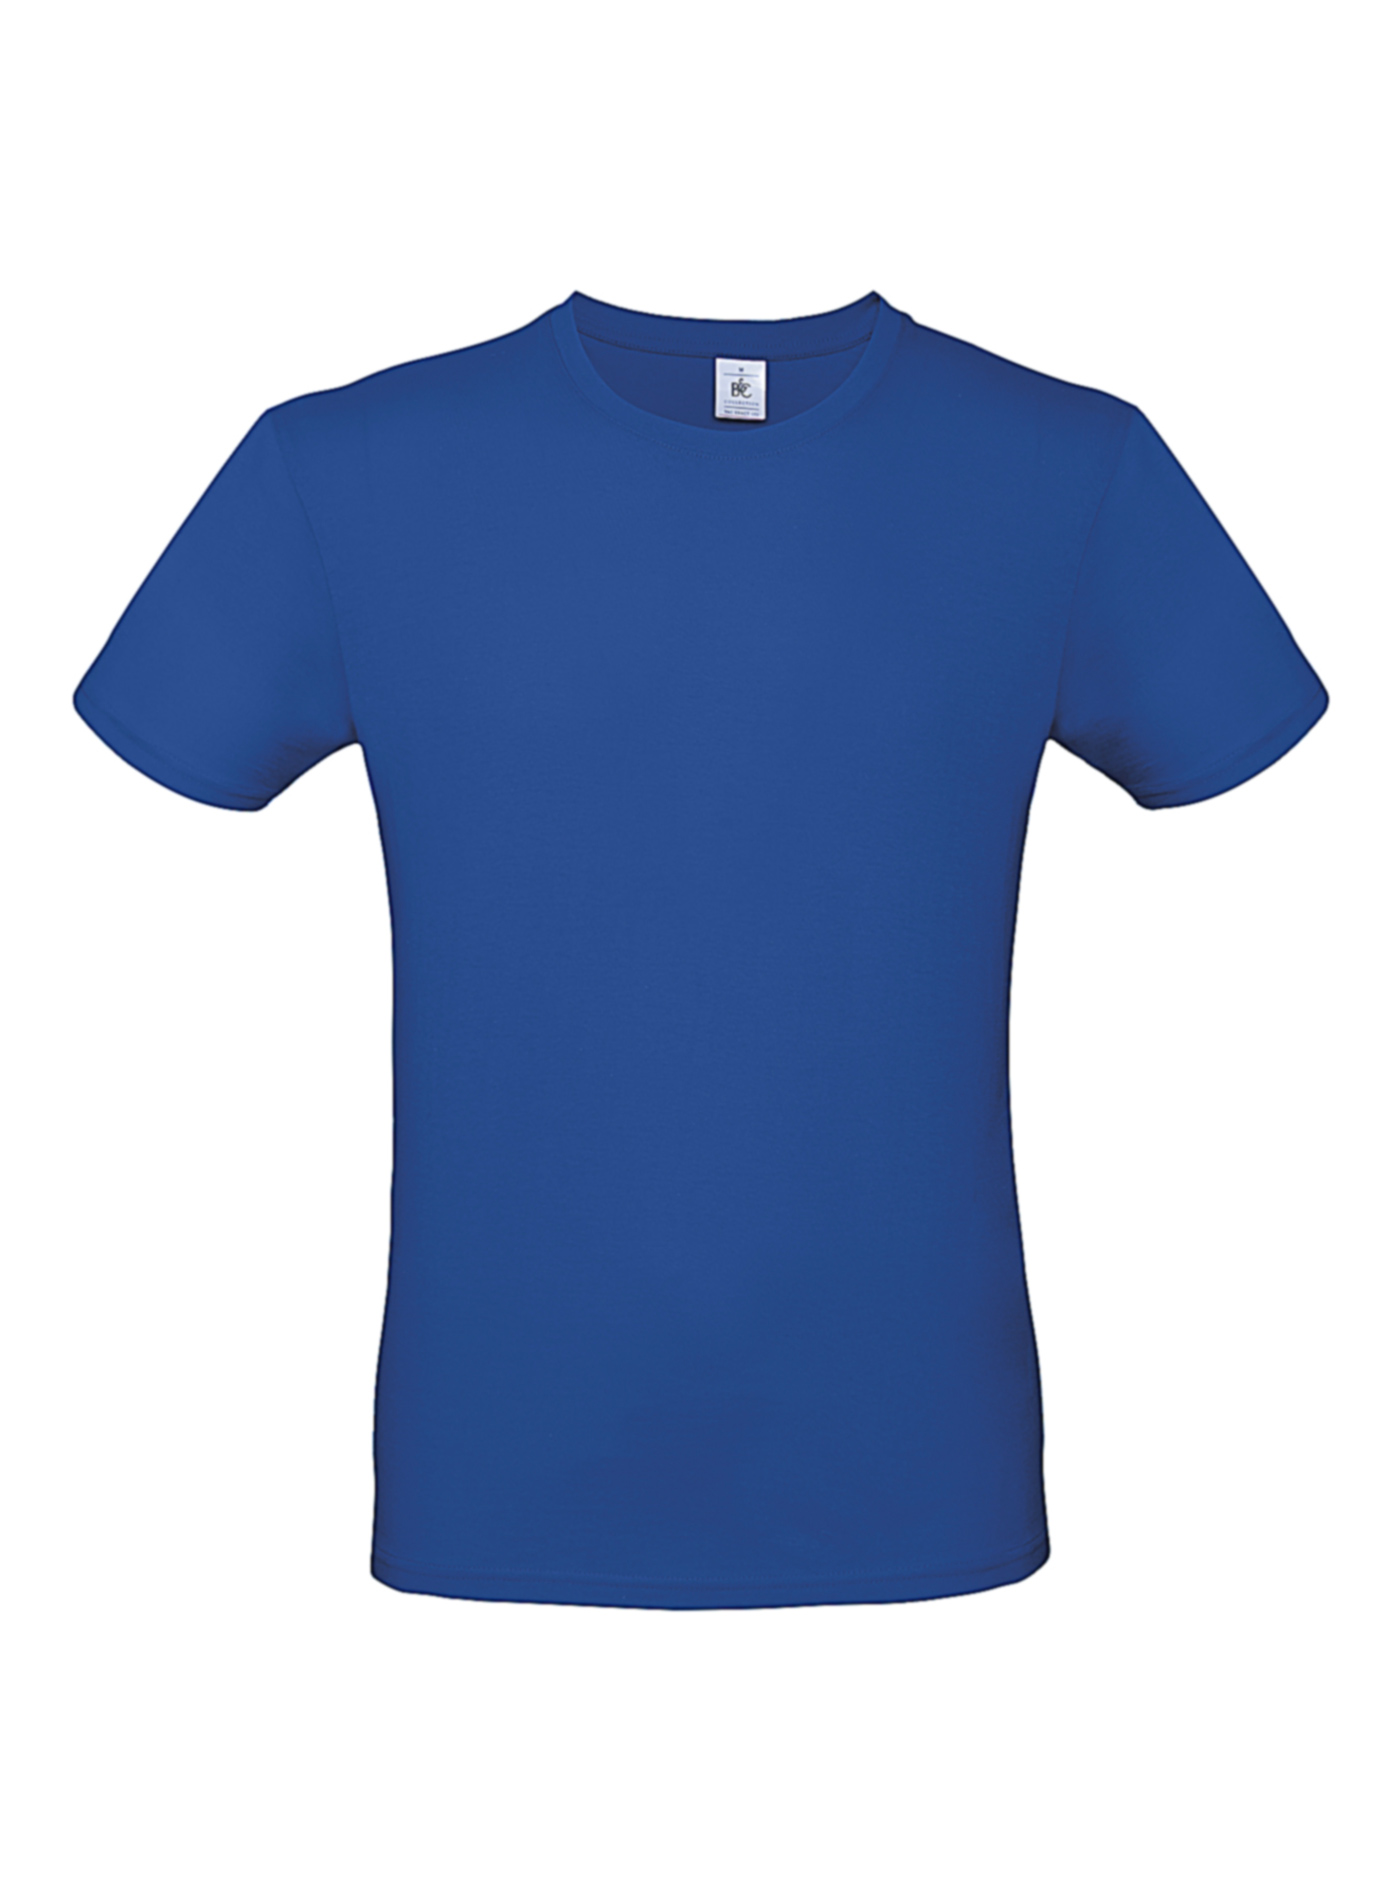 Pánské tričko B&C - královská modrá XS